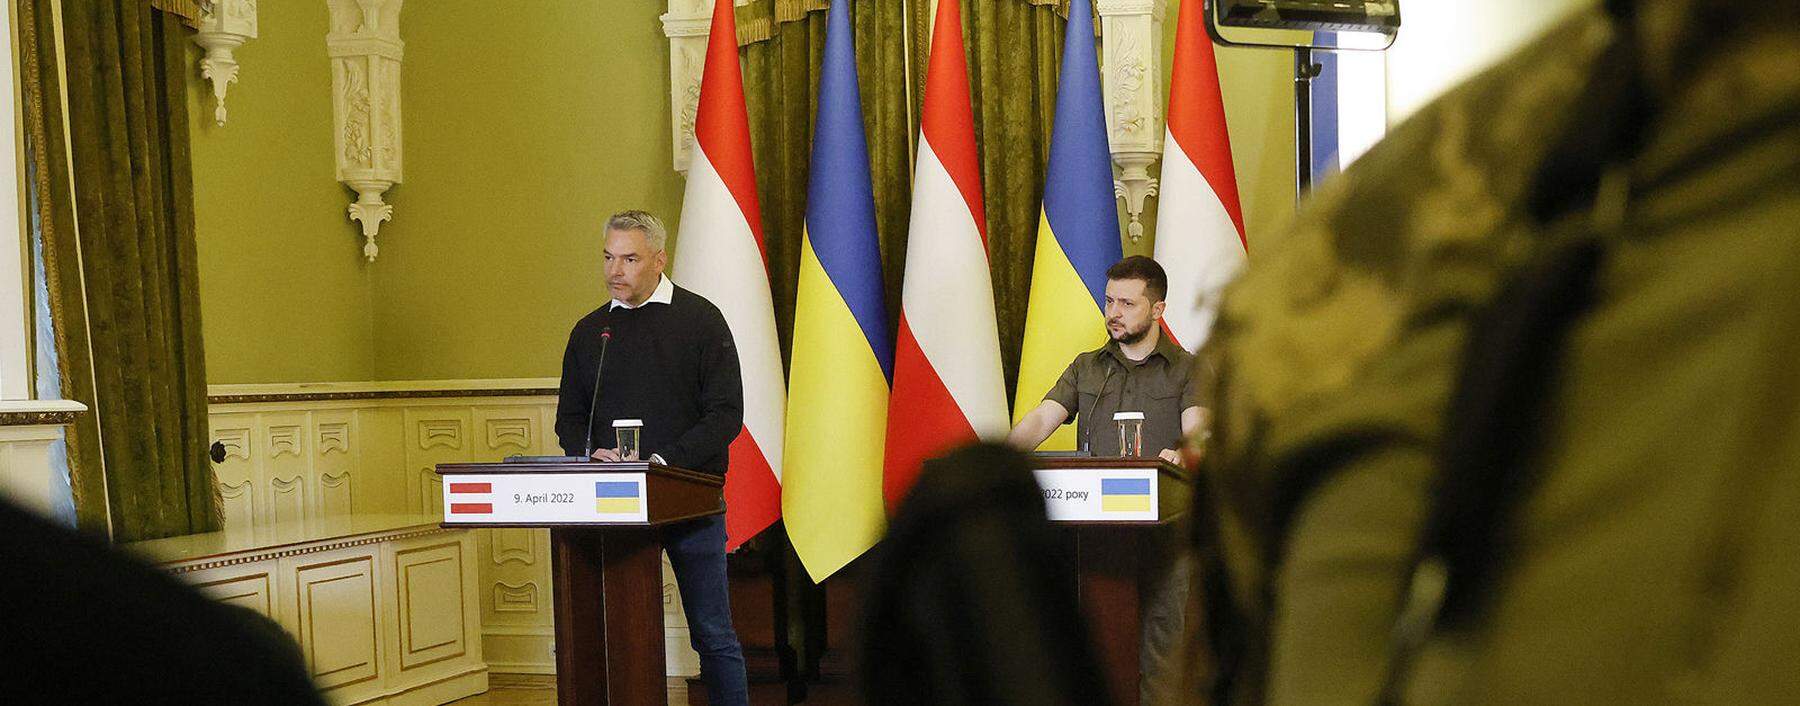 Pressekonferenz in Kiew: Die Republik trage alle Strafmaßnahmen der EU mit, versicherte Nehammer Wolodymyr Selenskij.